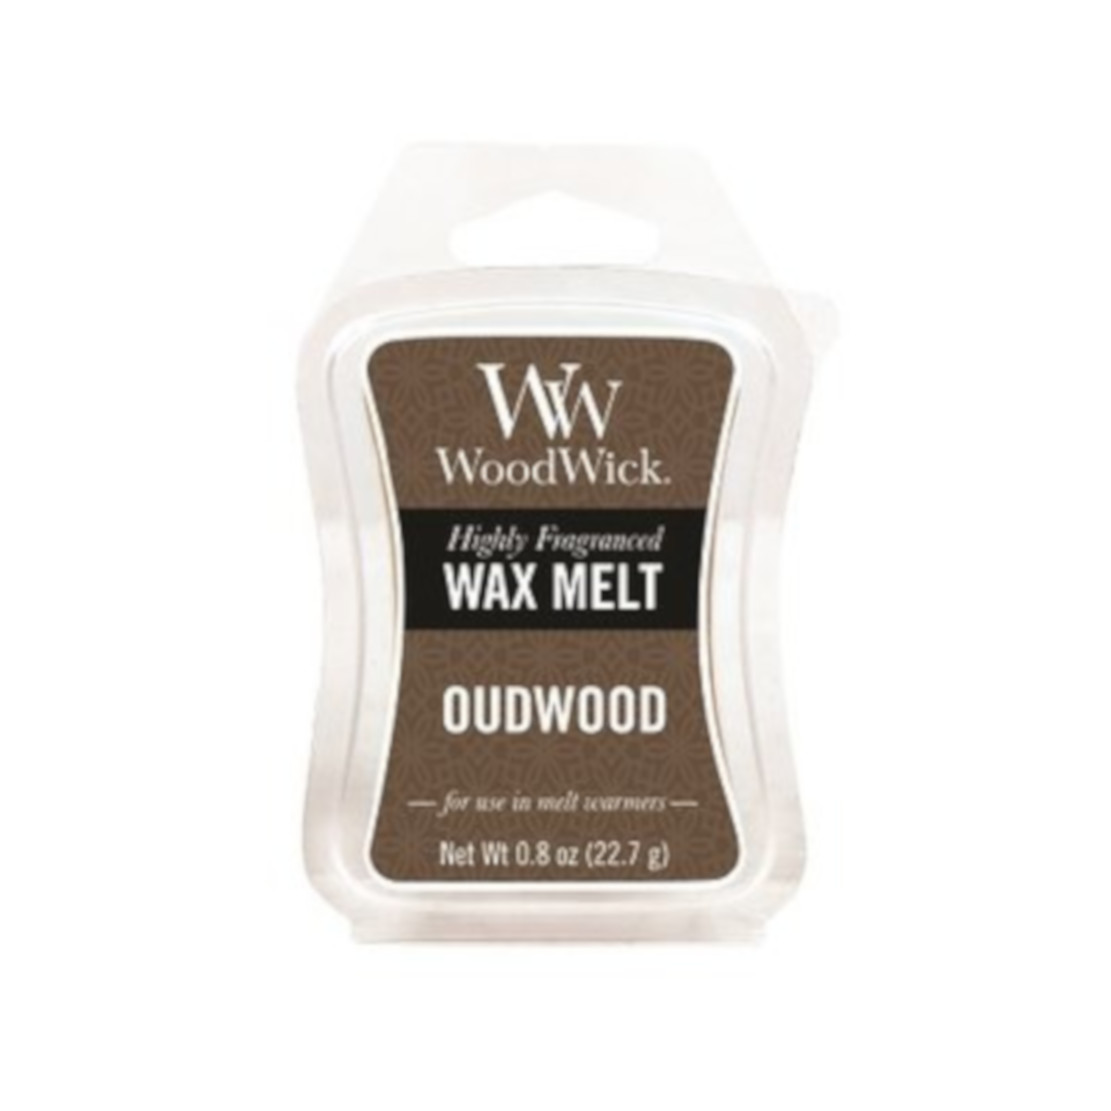 Woodwick Oudwood Wax Melts